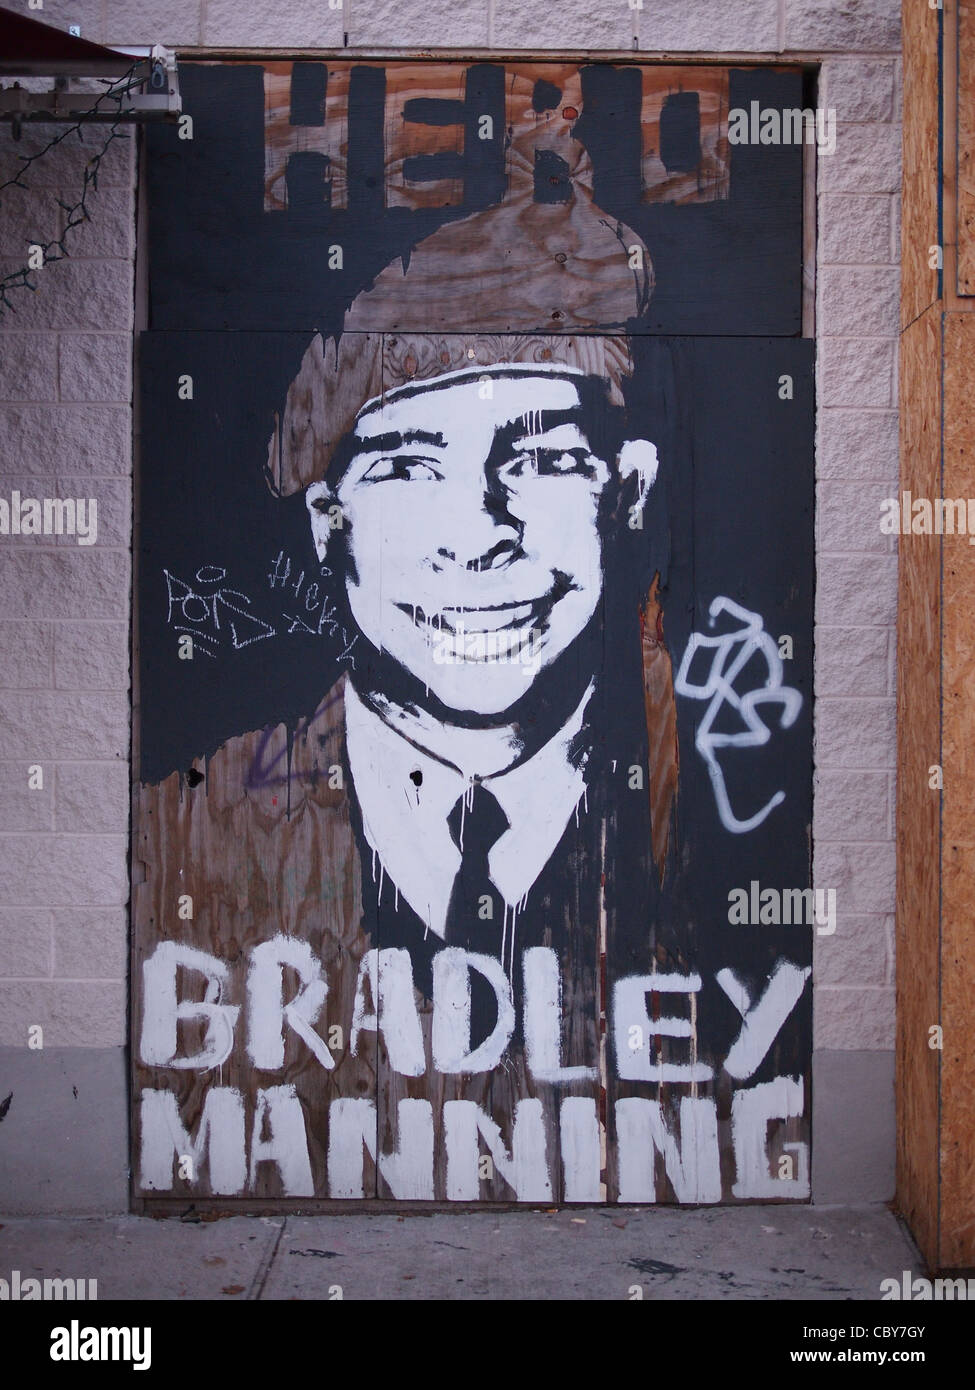 L'art de mur pour Bradley Manning, un soldat de l'armée américaine accusé d'envoyer des dossiers secrets à WikiLeaks Banque D'Images